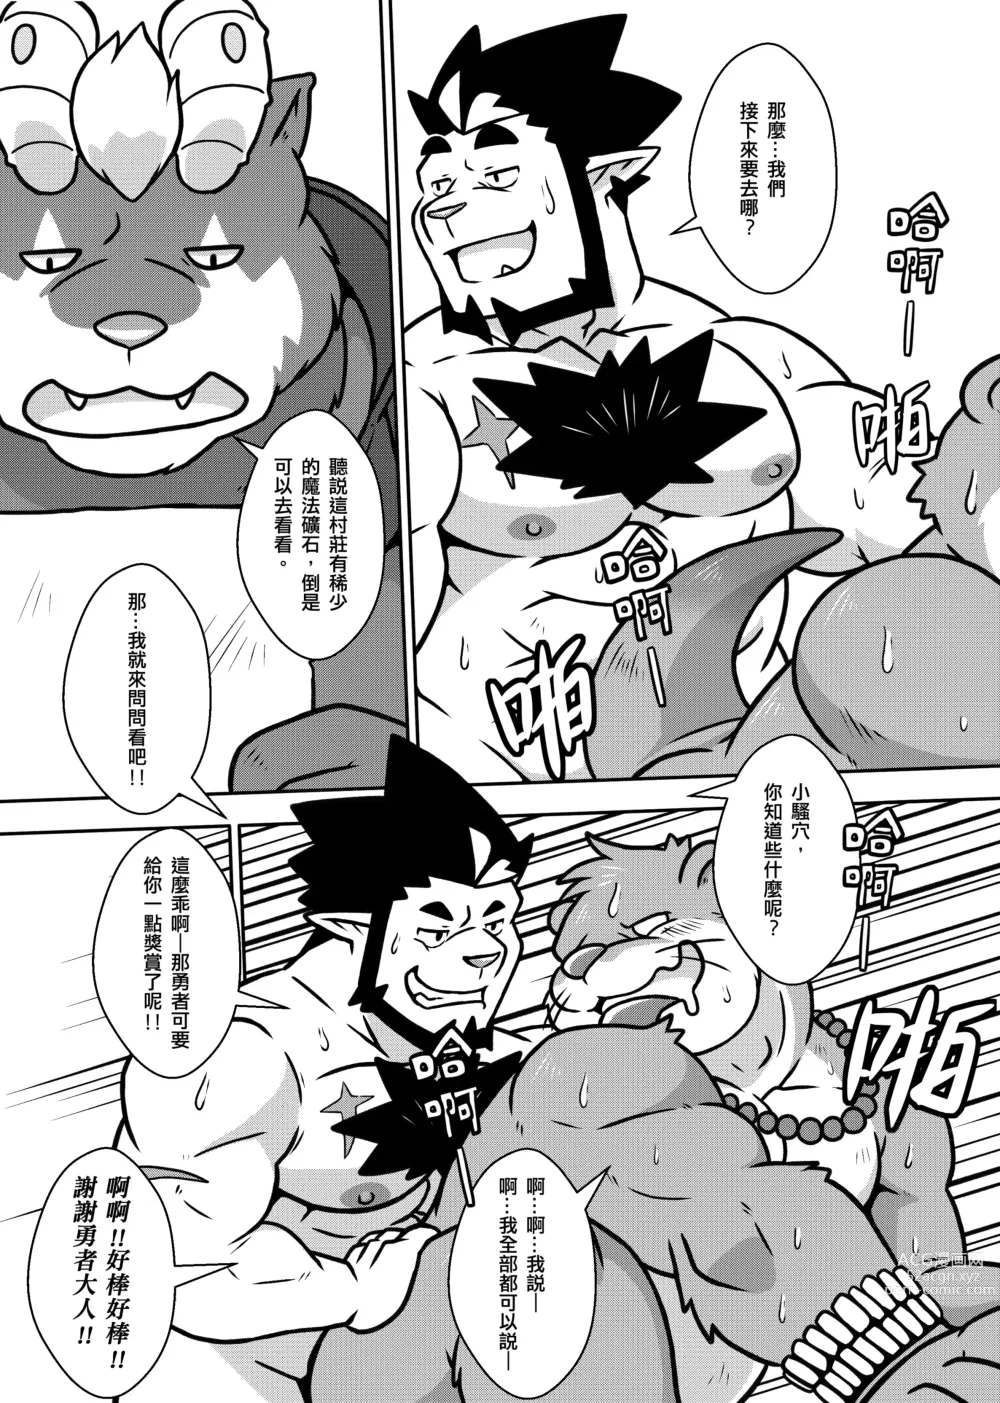 Page 9 of doujinshi 勇者的大小只有魔王塞得下2